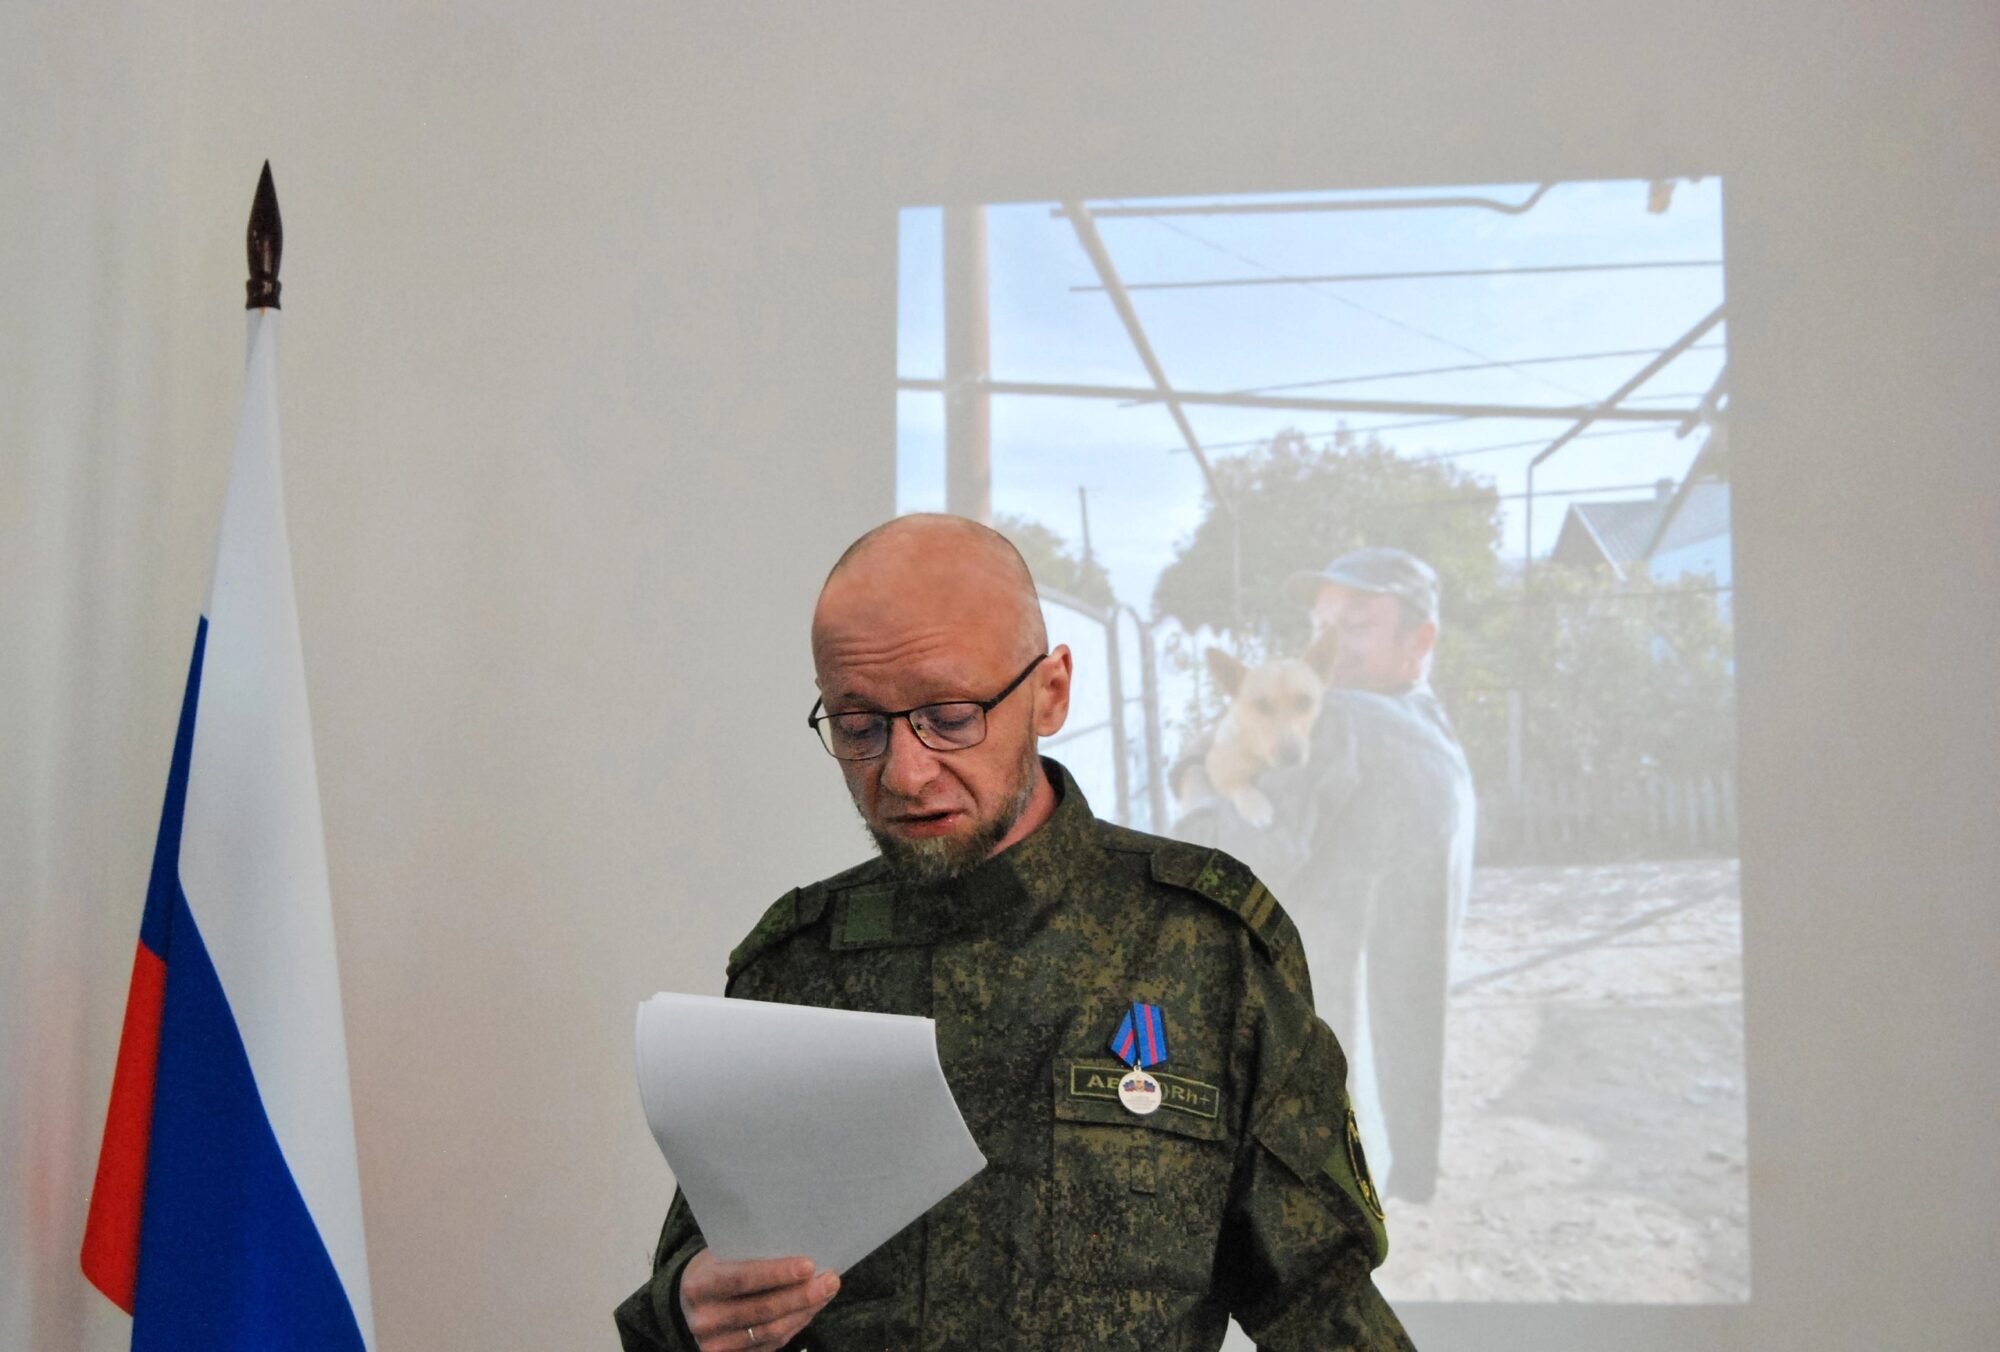 Іван Ревяєков виступає у військовій формі під російським триколором перед студентами ДонНУ